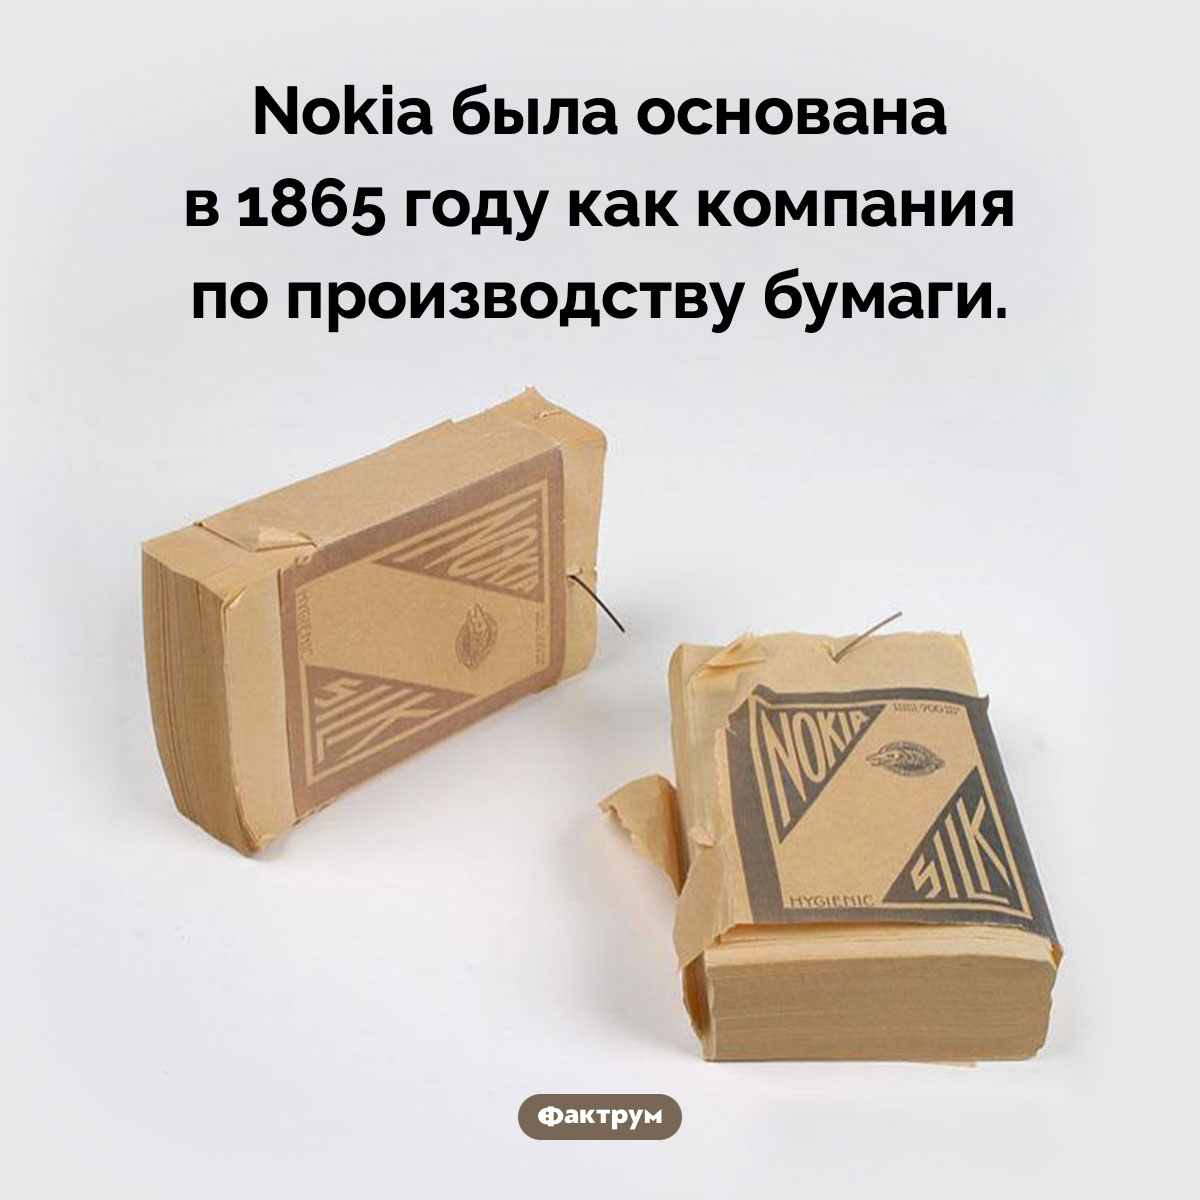 Nokia — бывшая бумажная компания